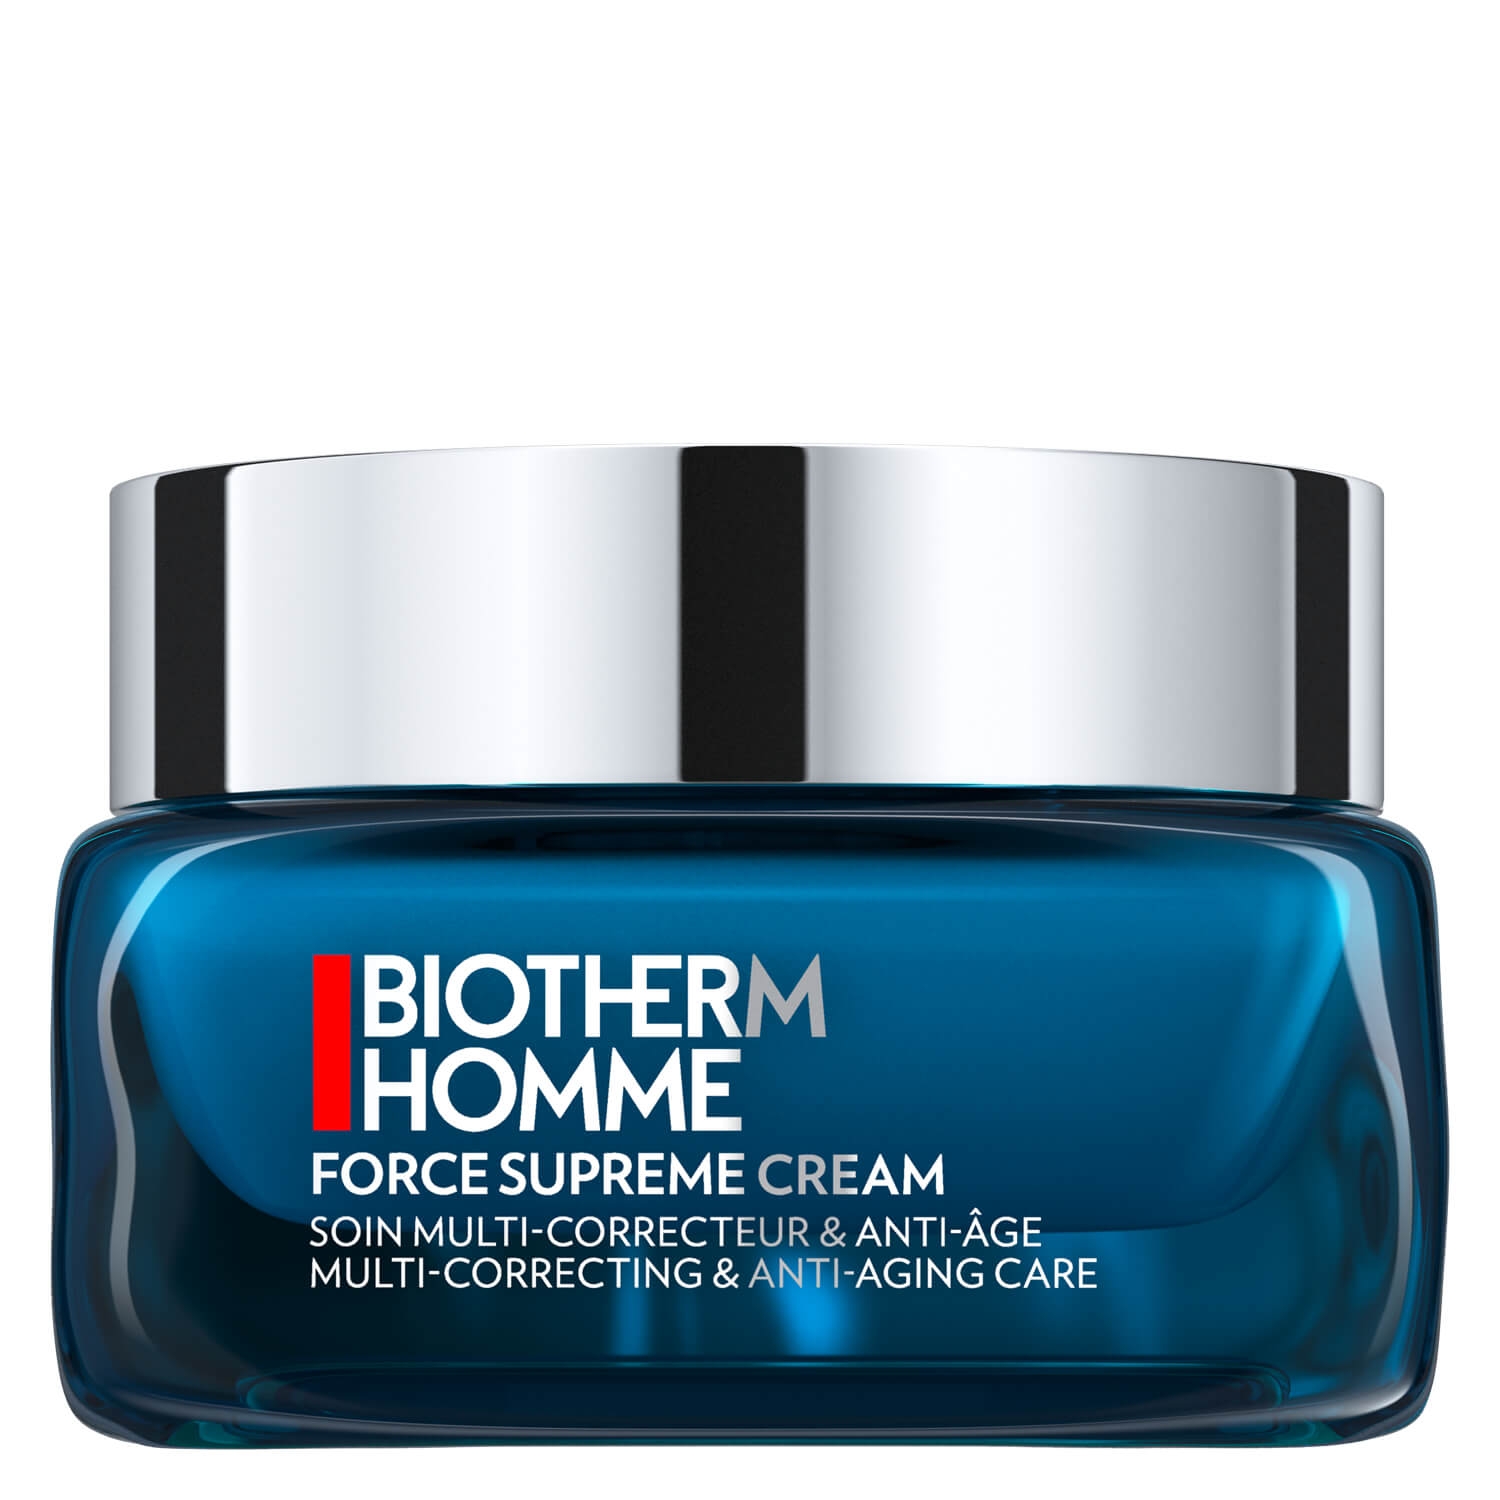 Produktbild von Biotherm Homme - Force Supreme Cream